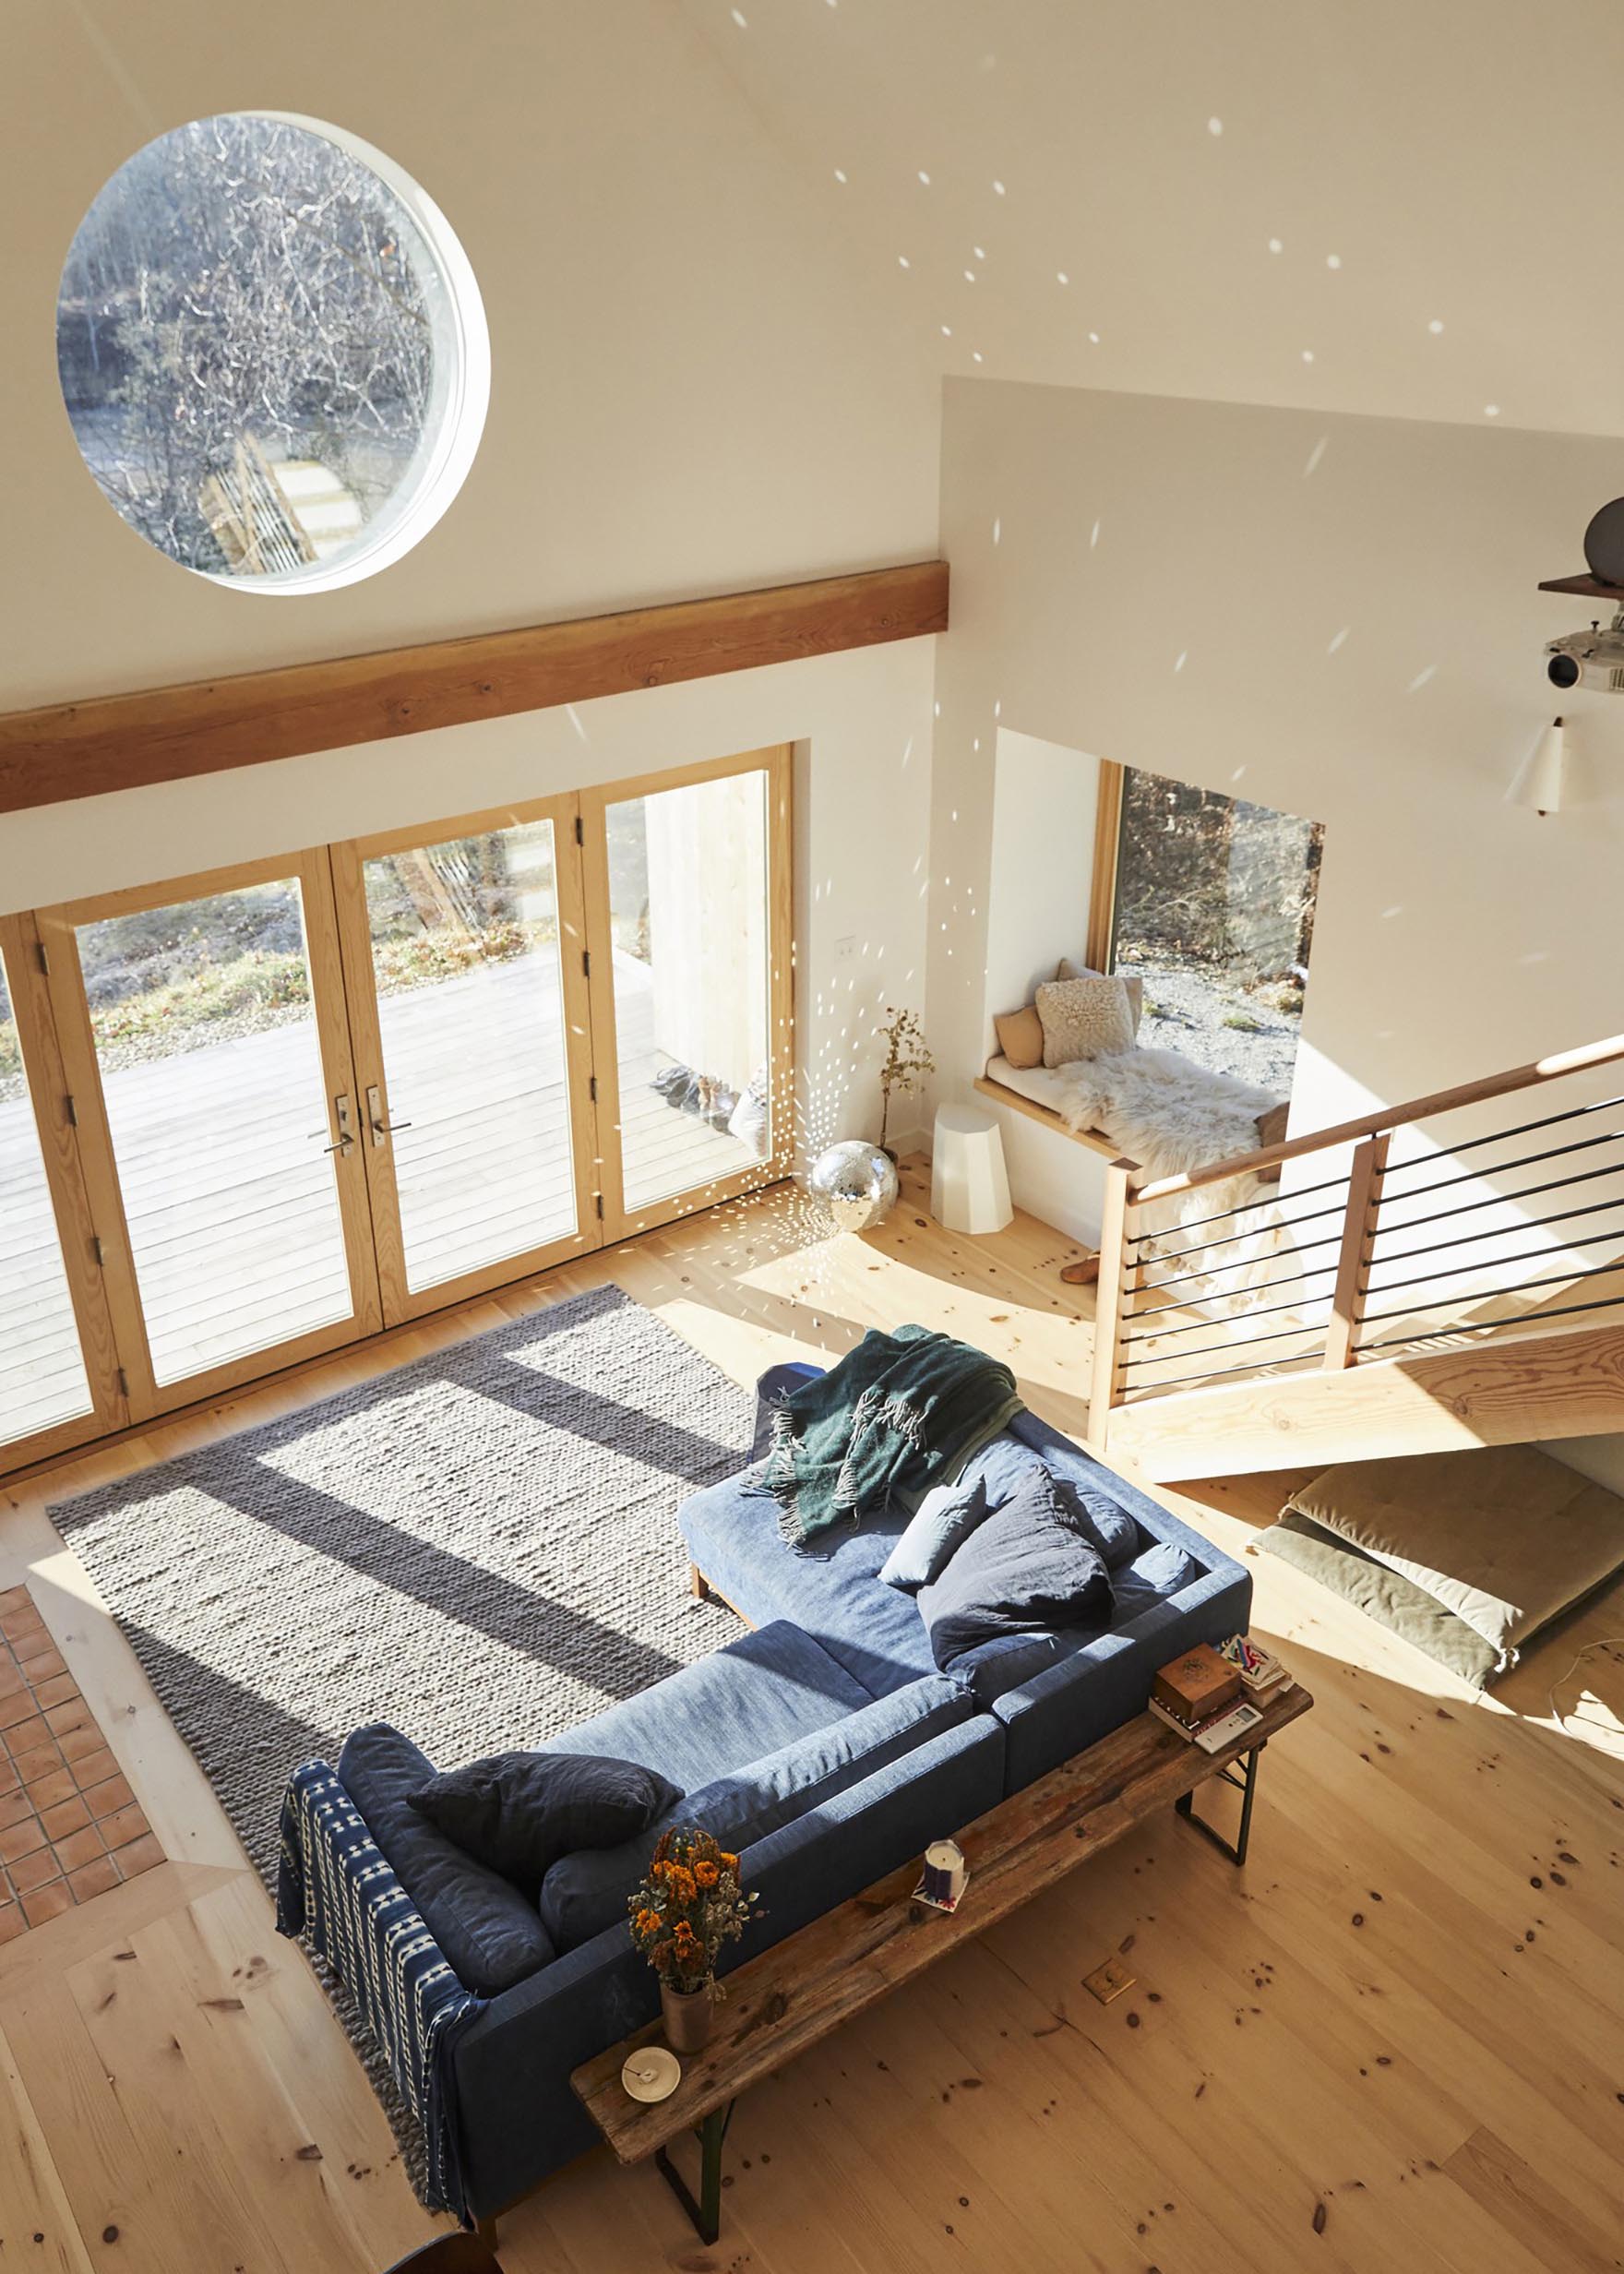 Гостиная в скандинавском стиле с синим диваном, большим серым ковром, уютным сиденьем у окна и зеркальным шаром, рассеивающим солнечный свет.